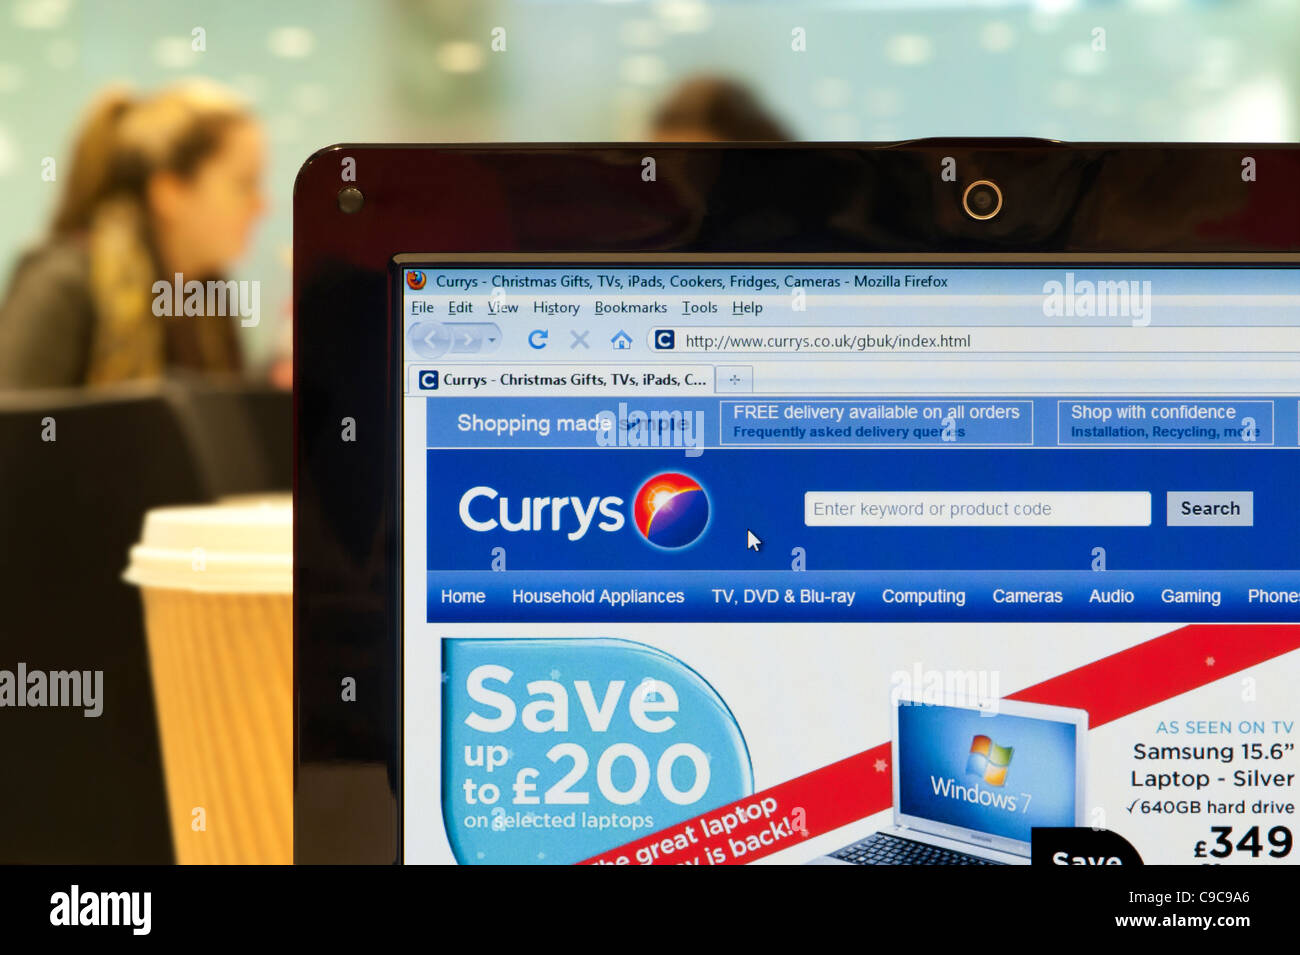 Die Currys Website erschossen in einem Coffee-Shop-Umfeld (nur zur redaktionellen Verwendung: print, TV, e-Book und redaktionelle Webseite). Stockfoto